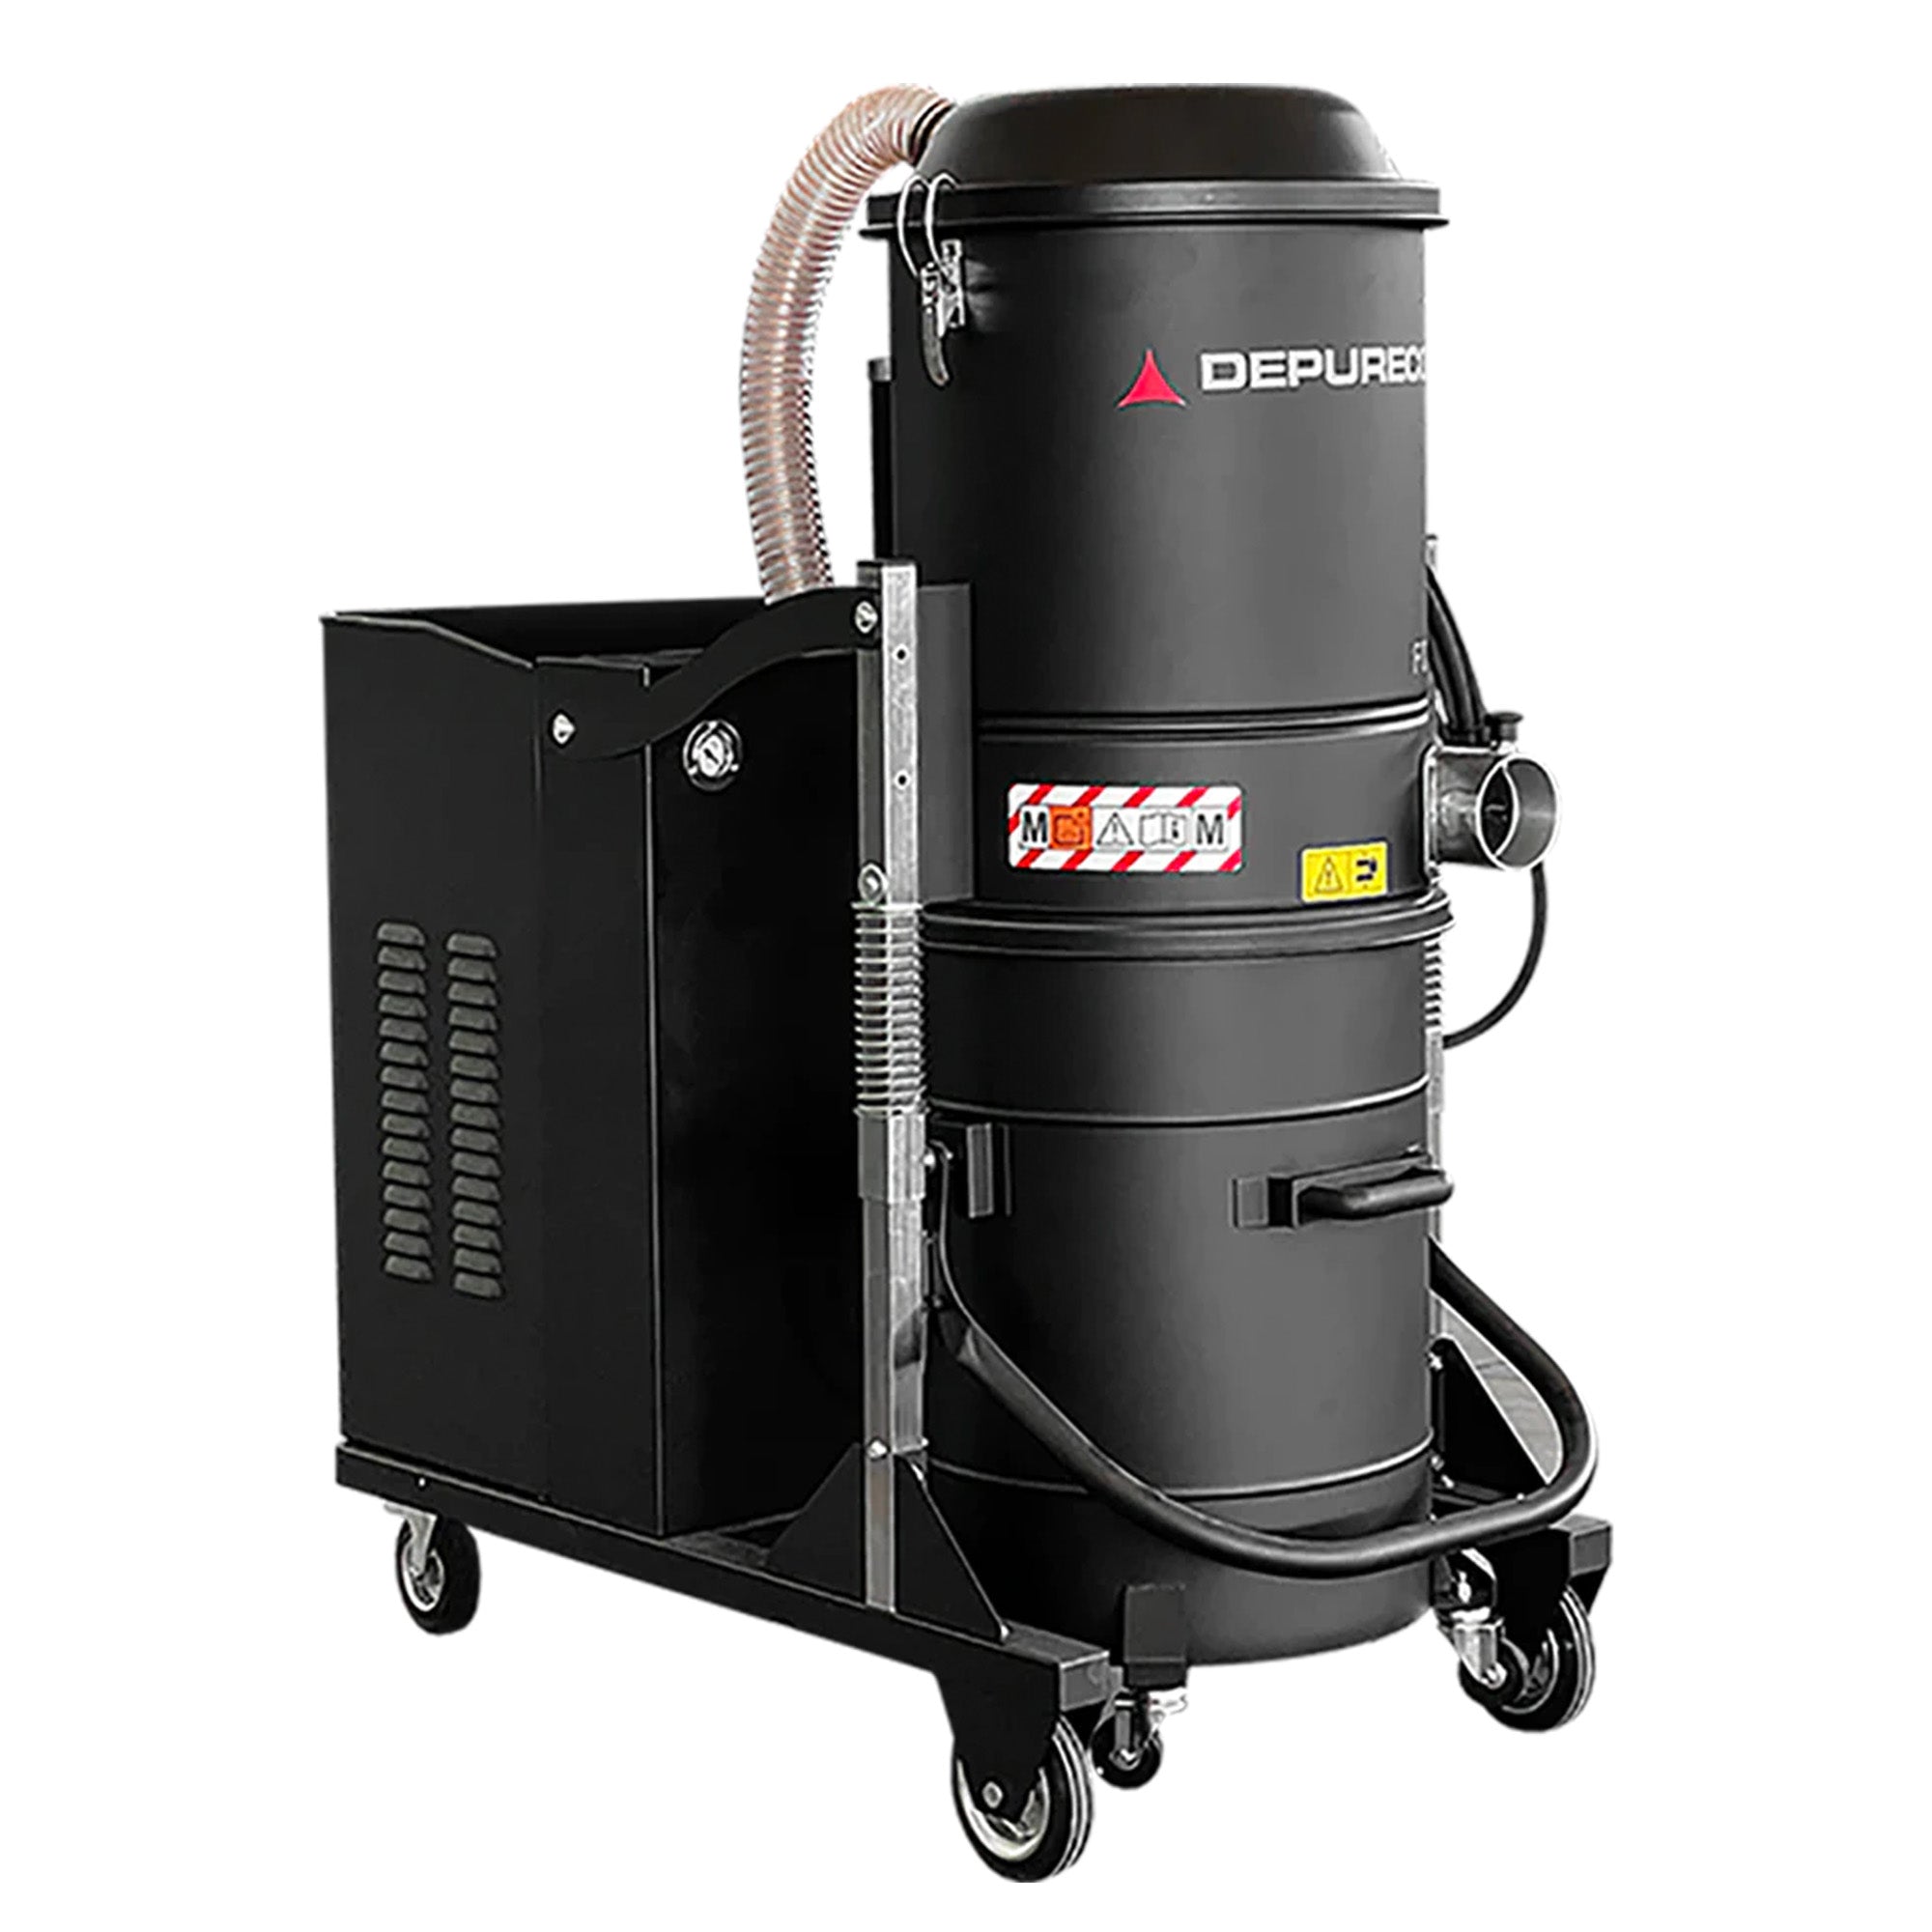 Depureco Fox 7.5 P Three-Phase Industrial Vacuum Cleaner